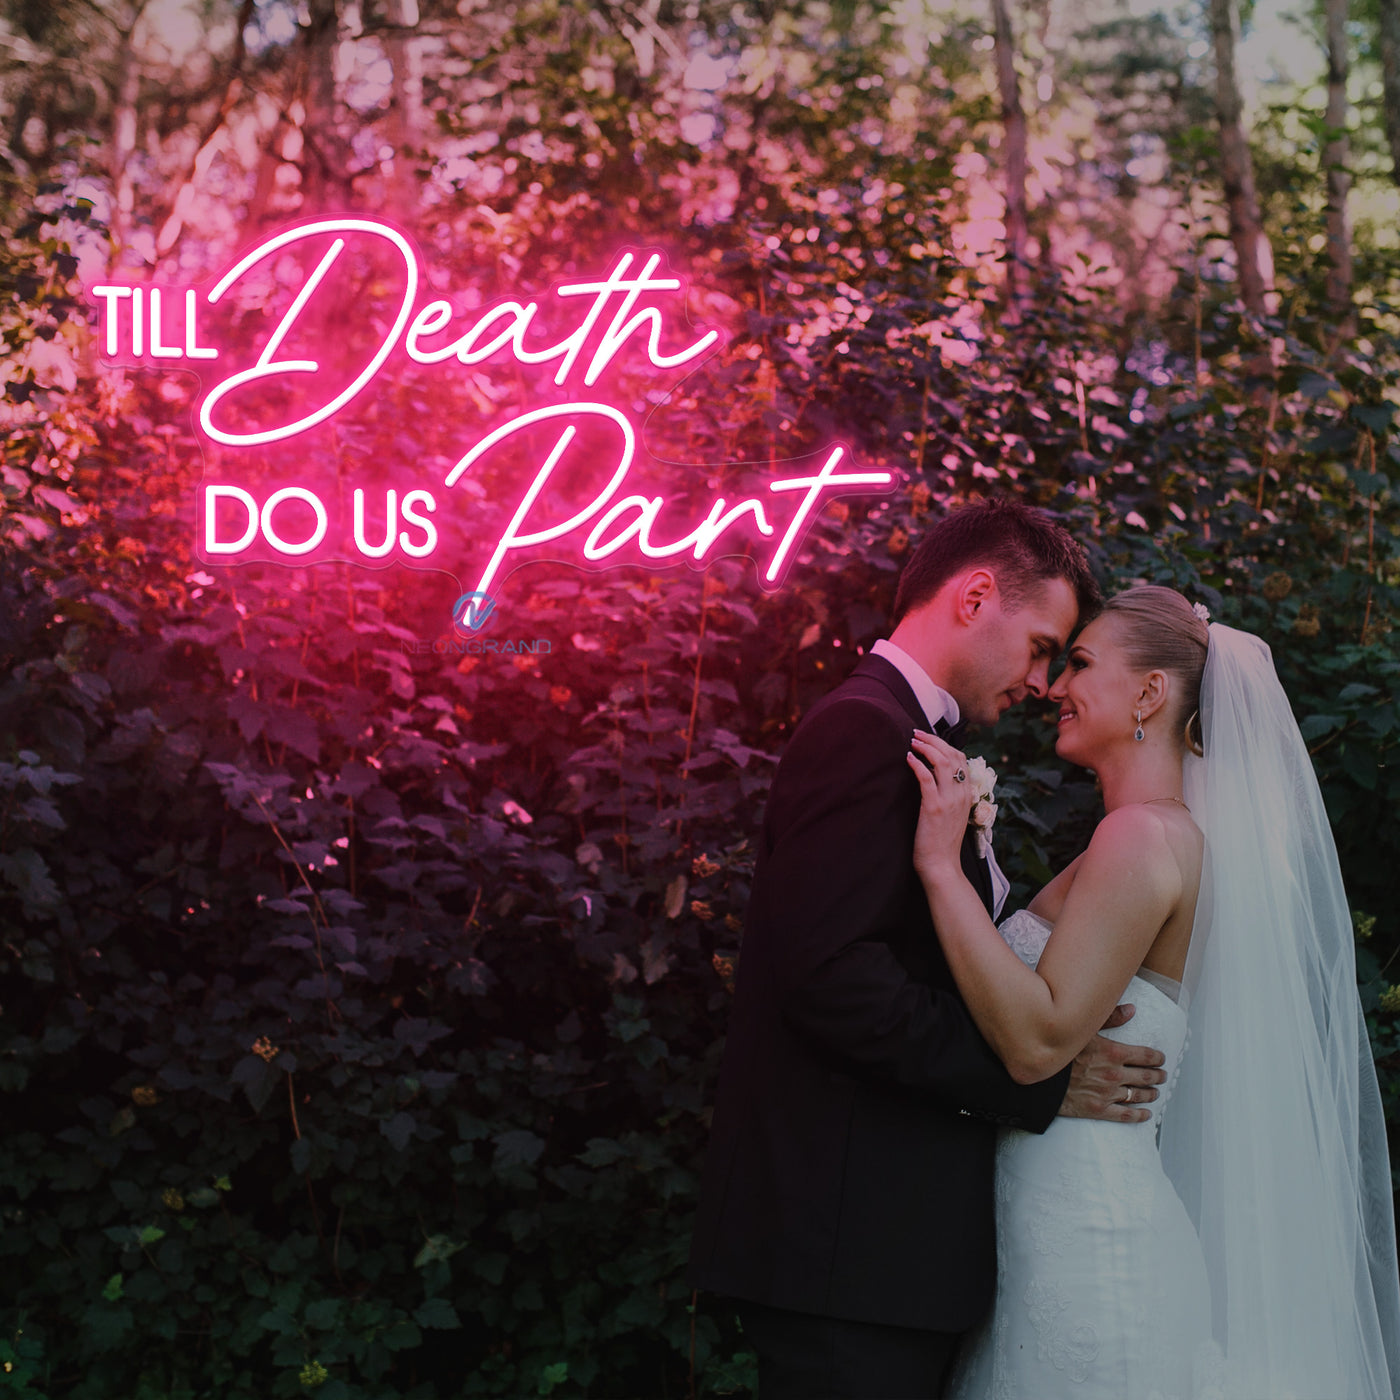 Til Death Do Us Part Neon Sign Wedding Led Light pink